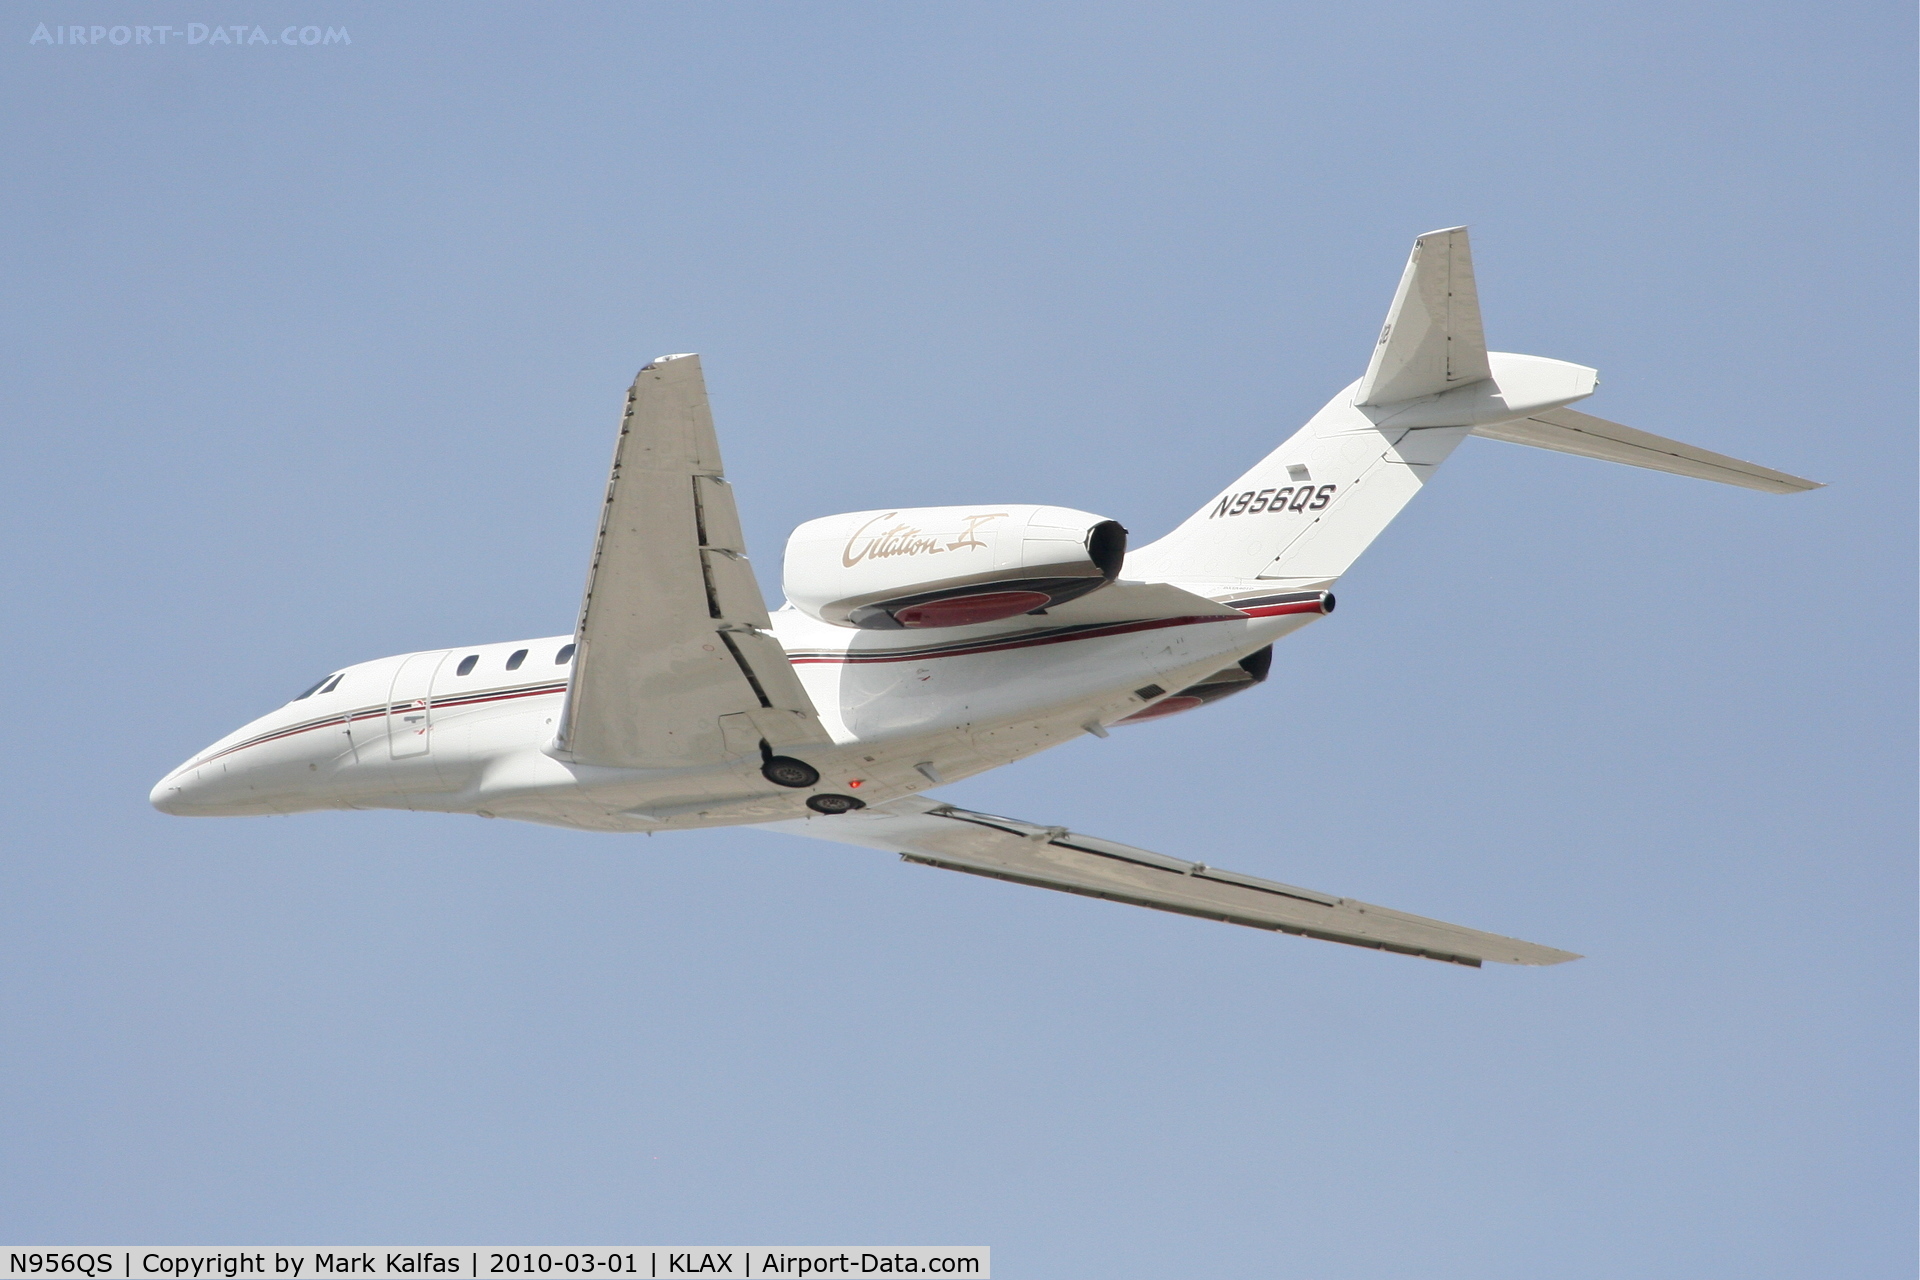 N956QS, 2001 Cessna 750 Citation X Citation X C/N 750-0156, Net Jets Citation X, N956QS, EJA956 25L departure for KSAN.